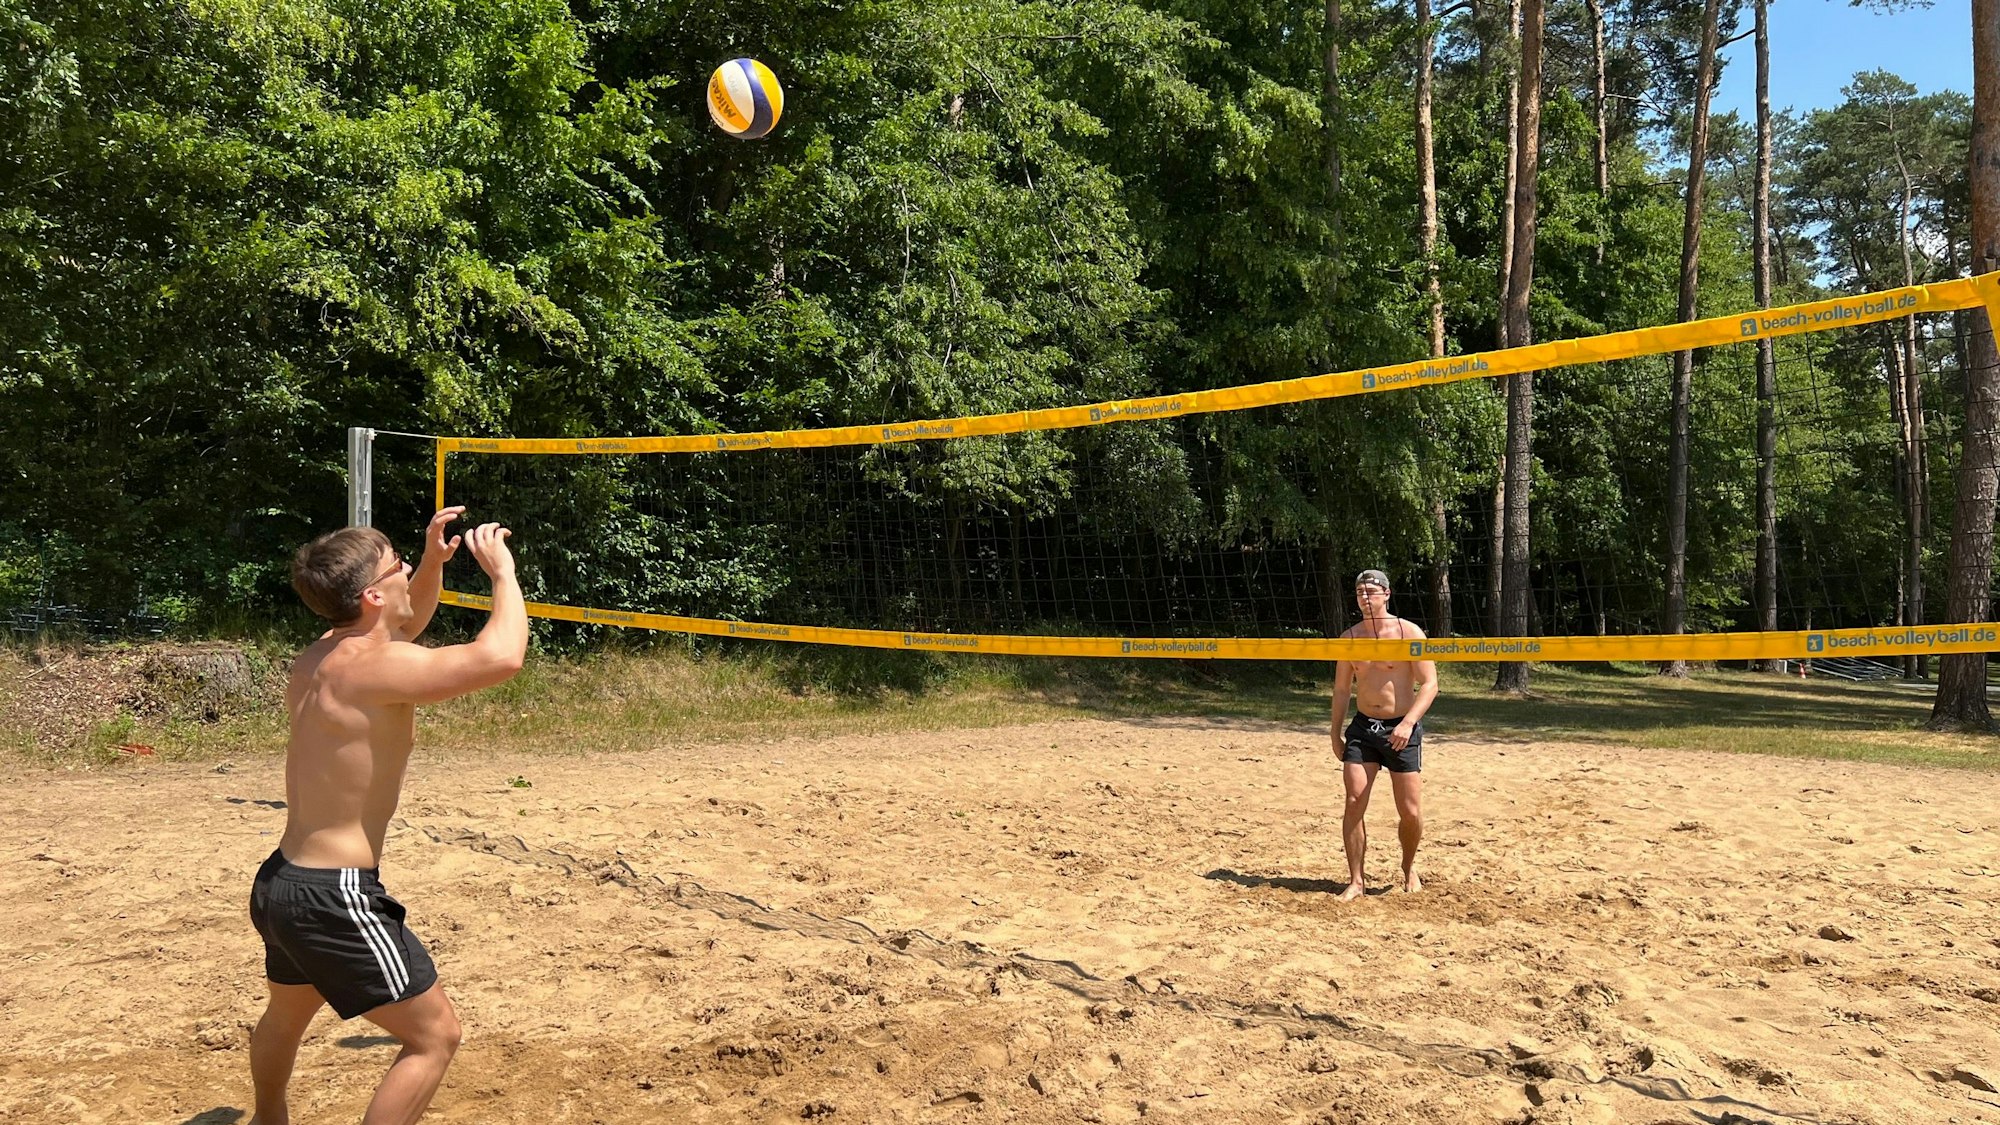 Zwei Männer spielen Beachvolleyball und werfen den Ball übers Netz.